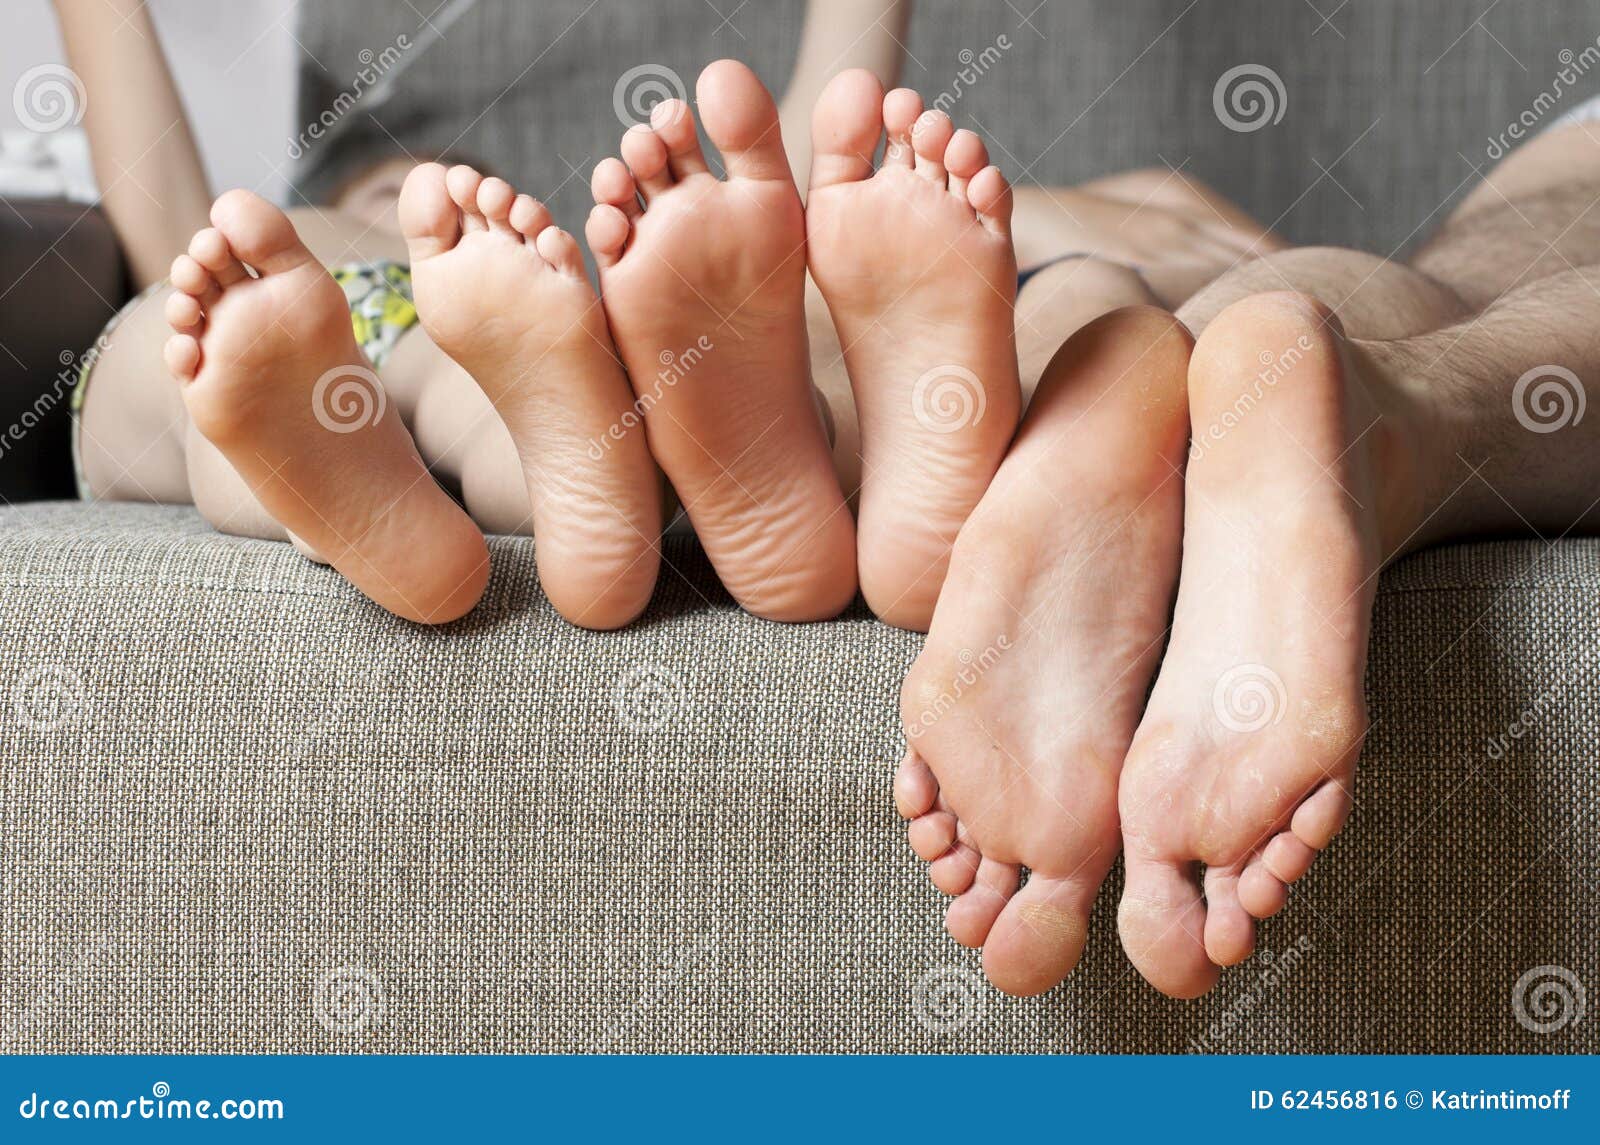 Teen Feet Close Up Sex Gallery